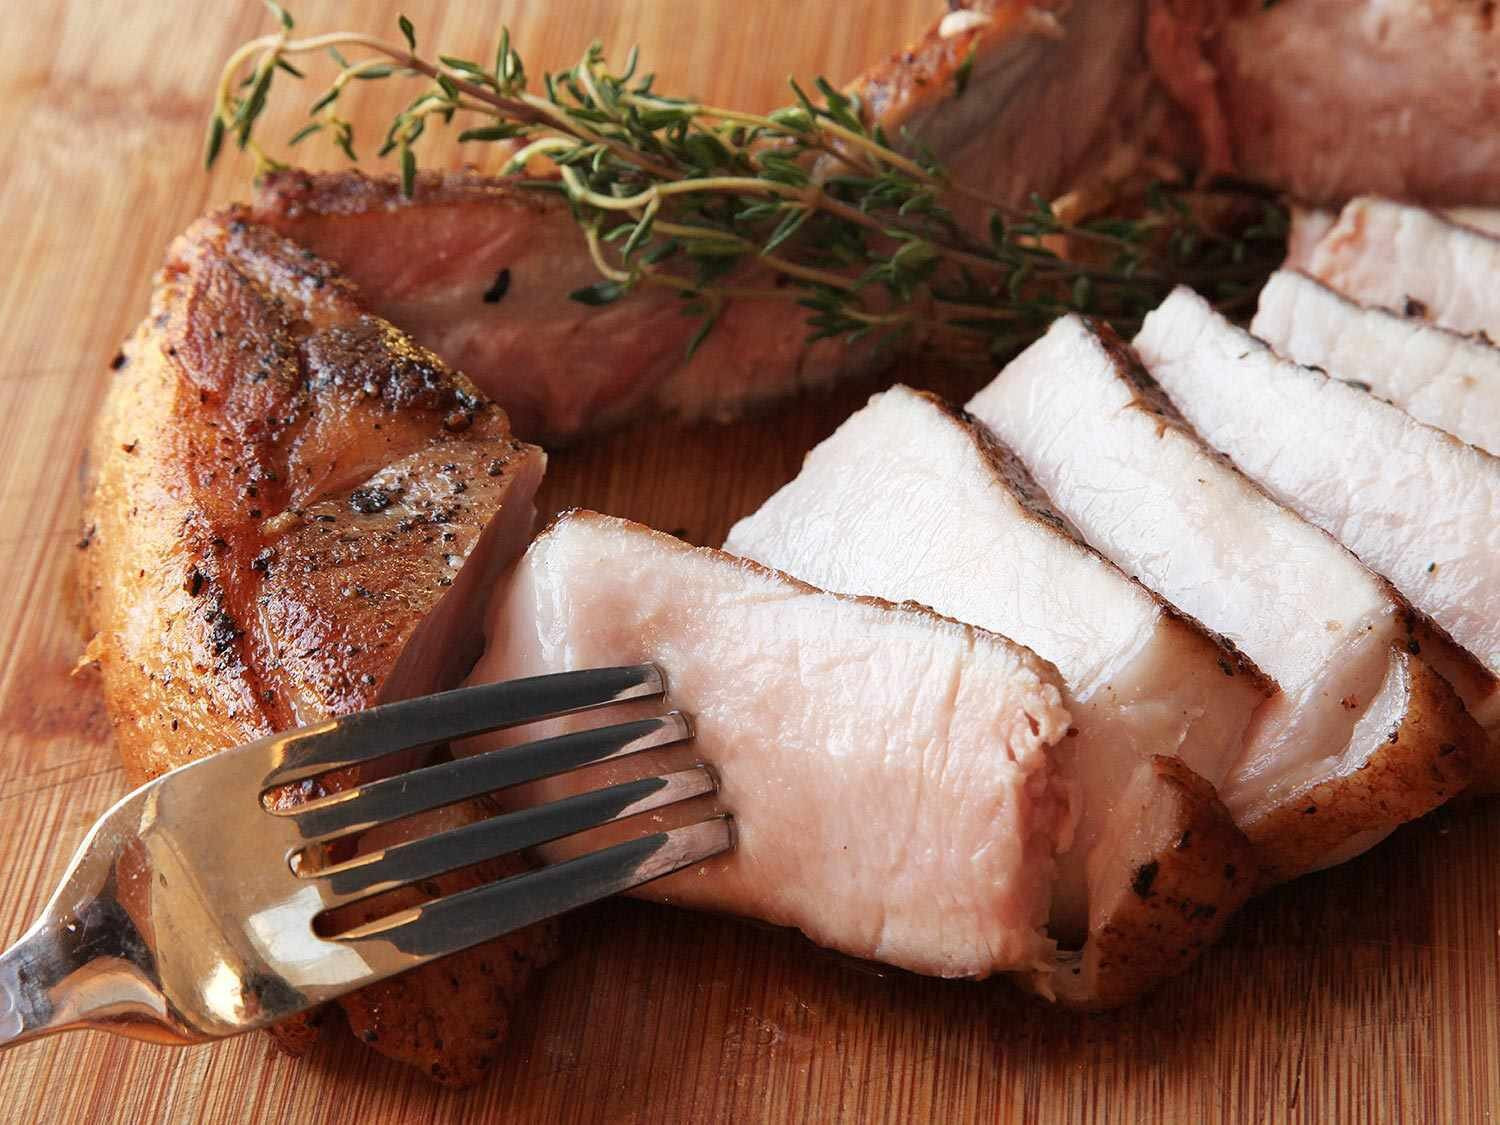 Vì sao thịt lợn cần được nấu chín kỹ trước khi ăn? Bởi vì nếu ăn thịt lợn tái, bạn sẽ có nguy cơ nhiễm sán. (Ảnh: Serious Eats)